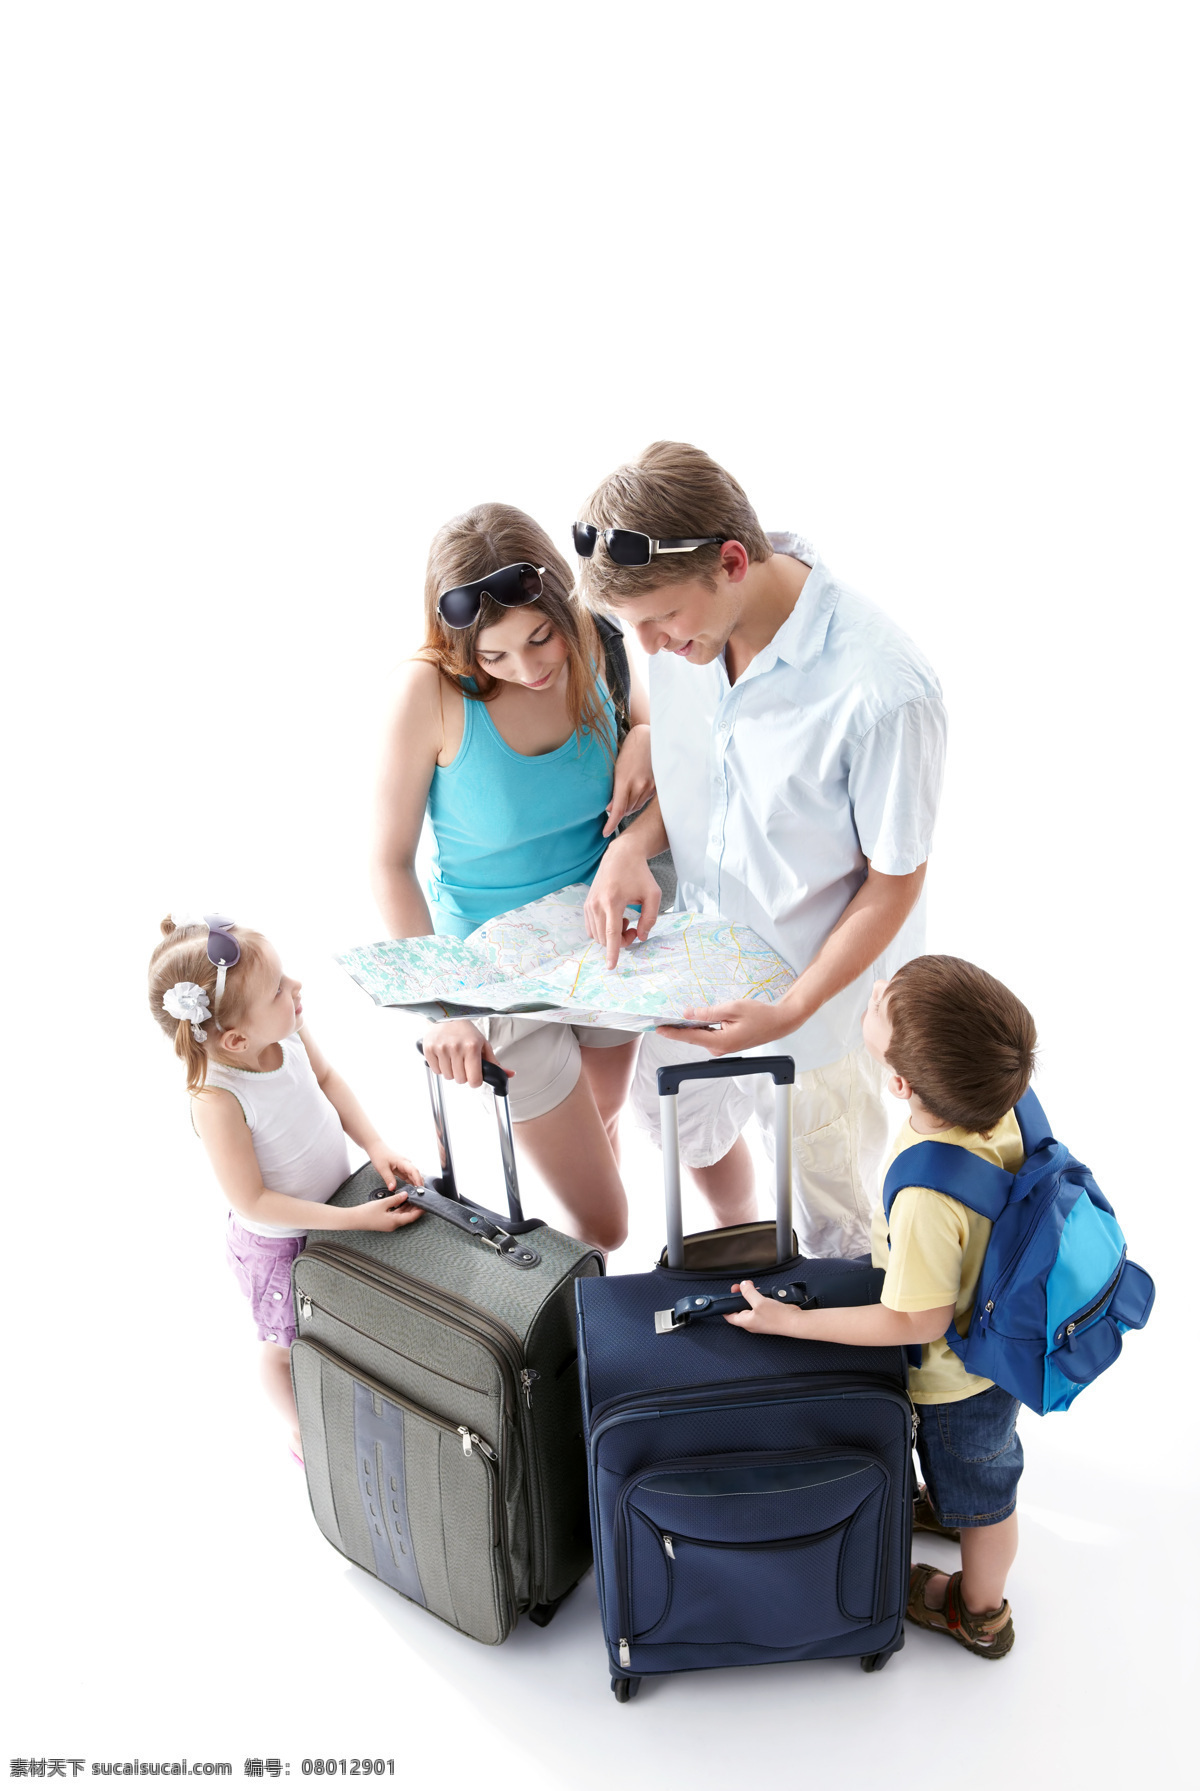 旅游 一家 四口 旅游的家庭 外国夫妻 外国夫妇 儿童 小女孩 小男孩 旅行 拉杆箱 行李箱 密码箱 生活人物 人物图片